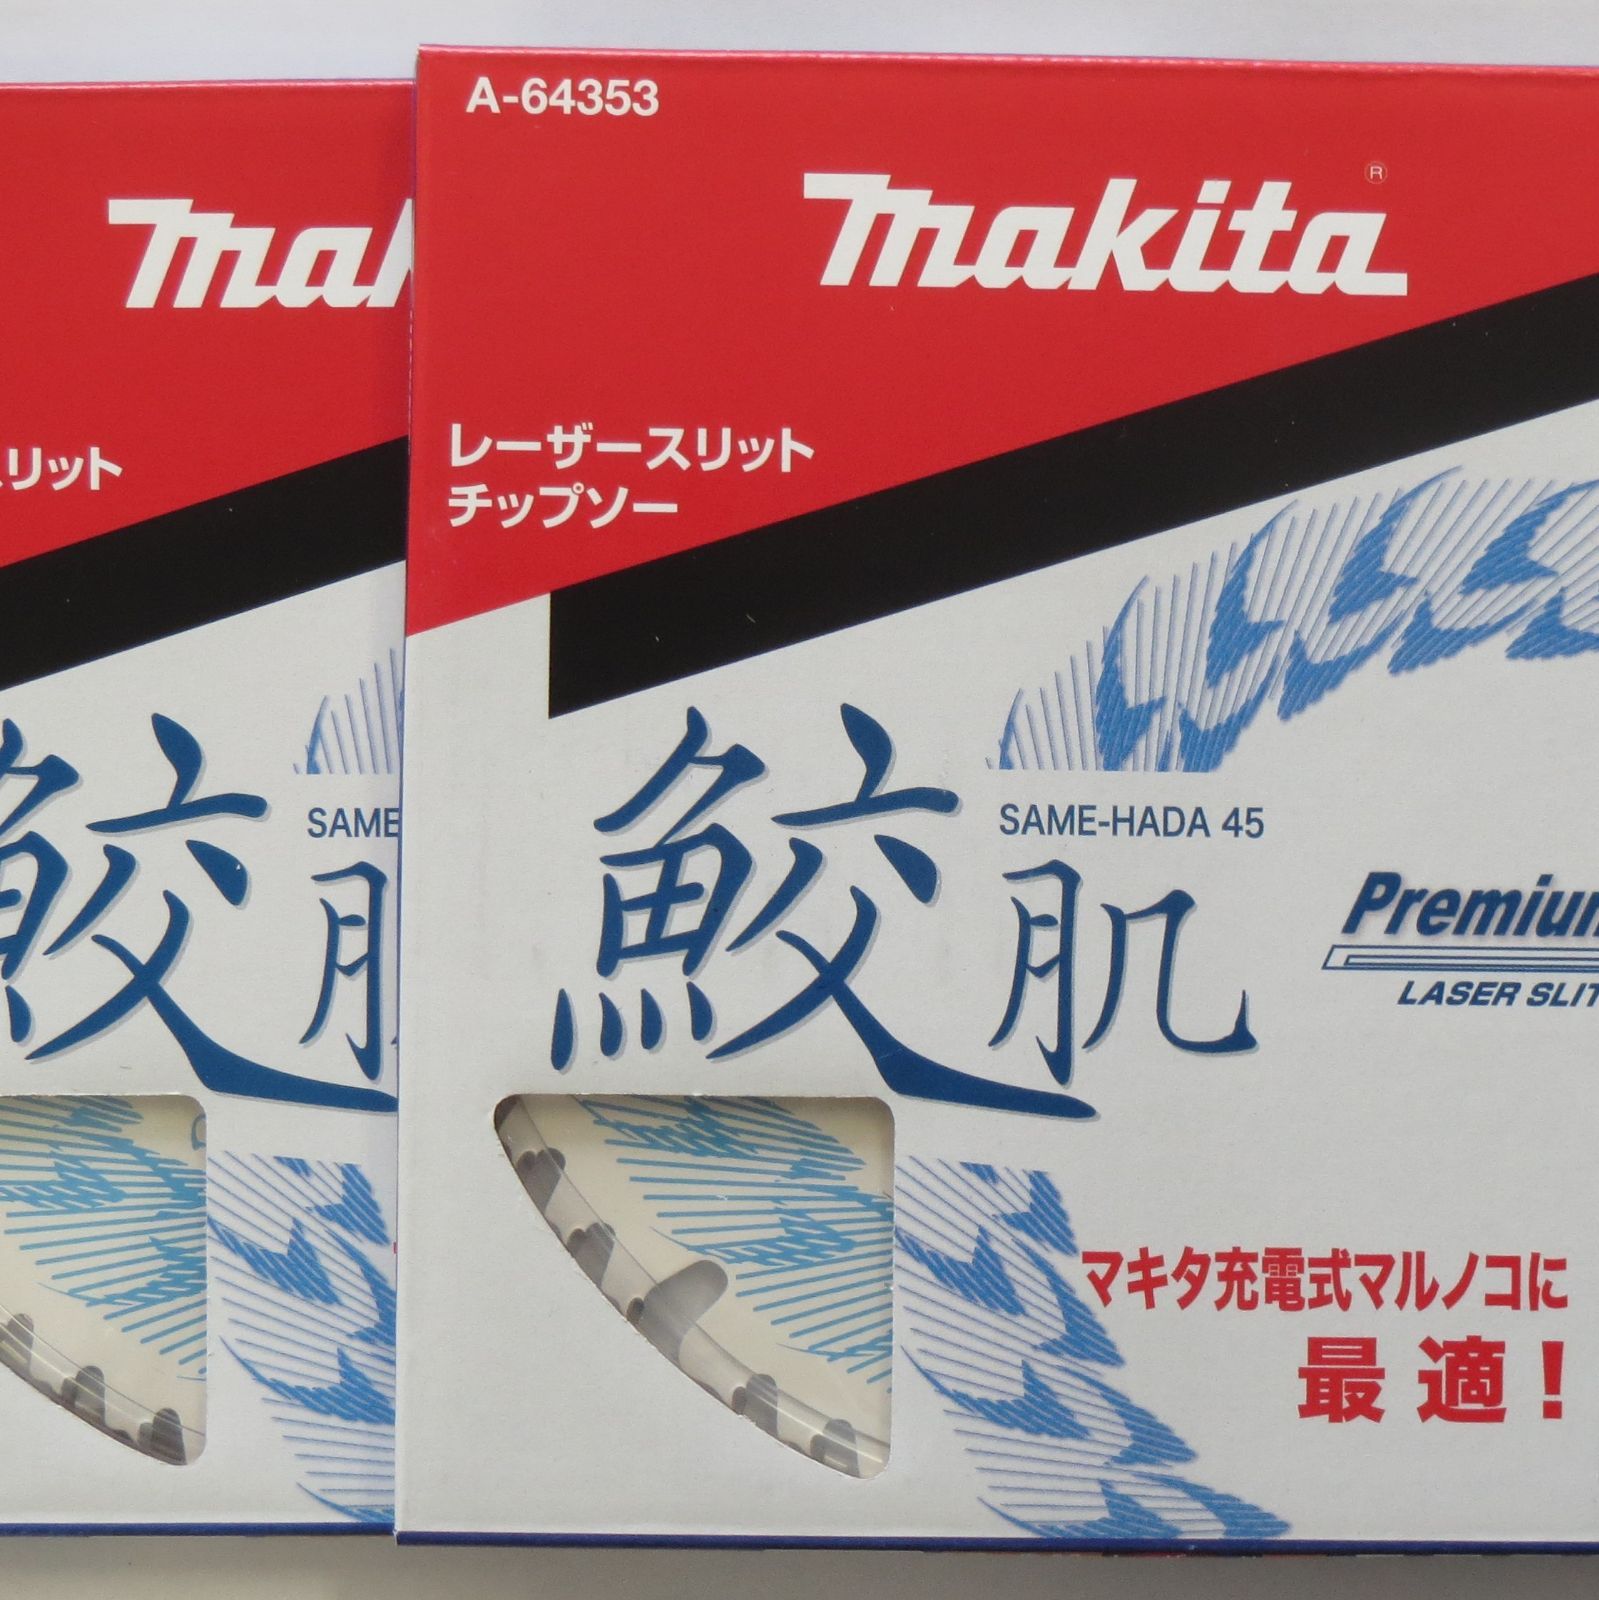 マキタ A-64353×2枚 鮫肌レーザースリットチップソー 外径165mm 刃数45 集成材、一般木材用 - メルカリ